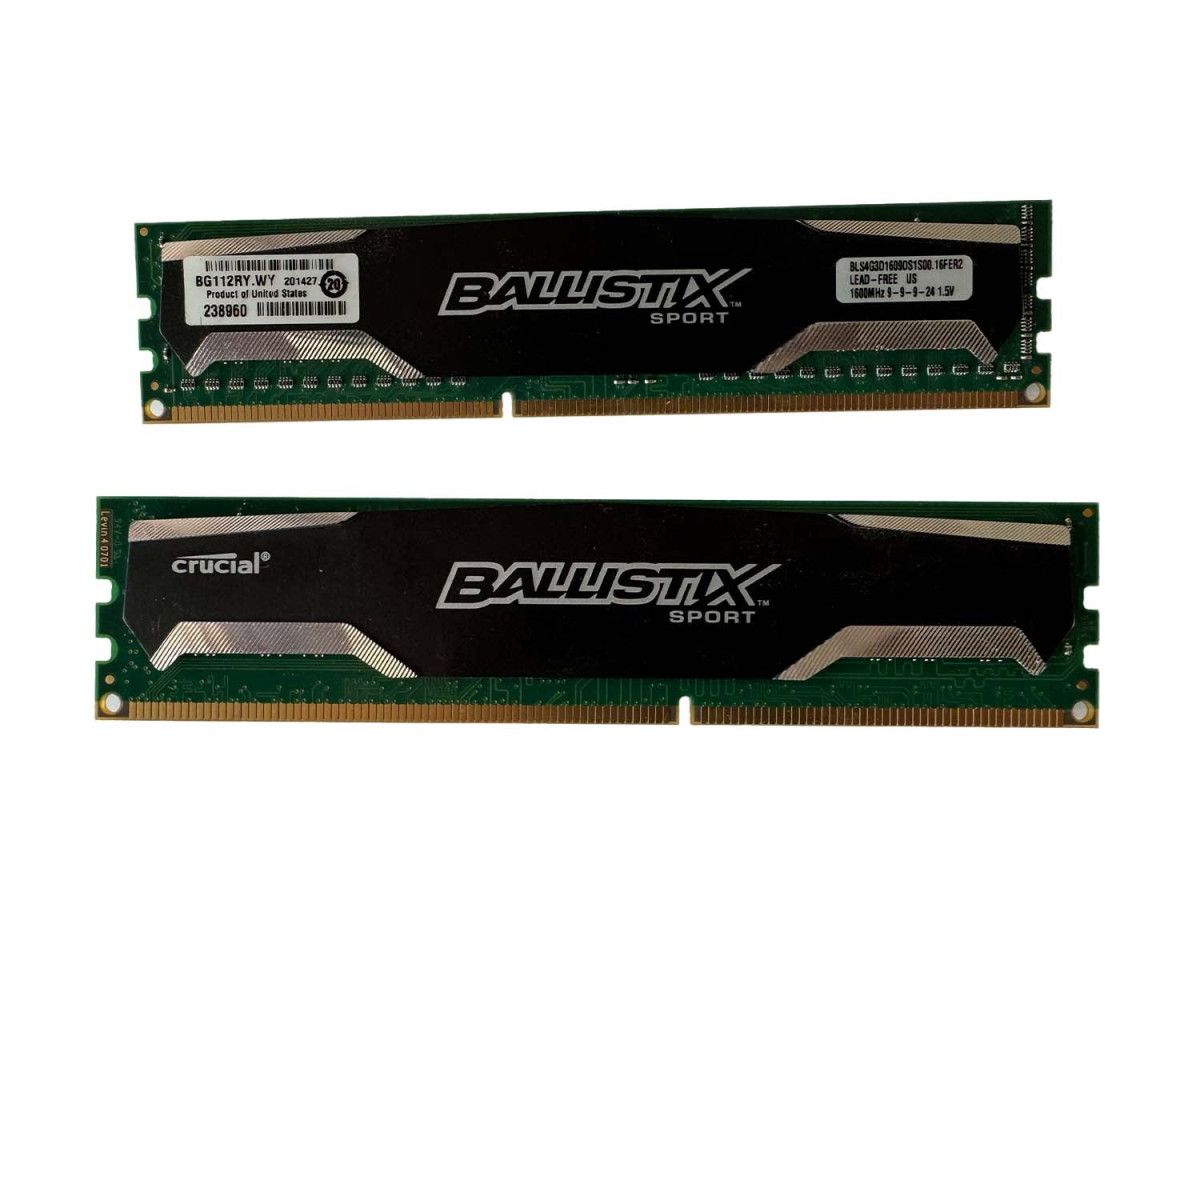 2x 4GB DDR3-1600 Memorie de jocuri - BLS4G3D1609DS1S00 1 - Memstar